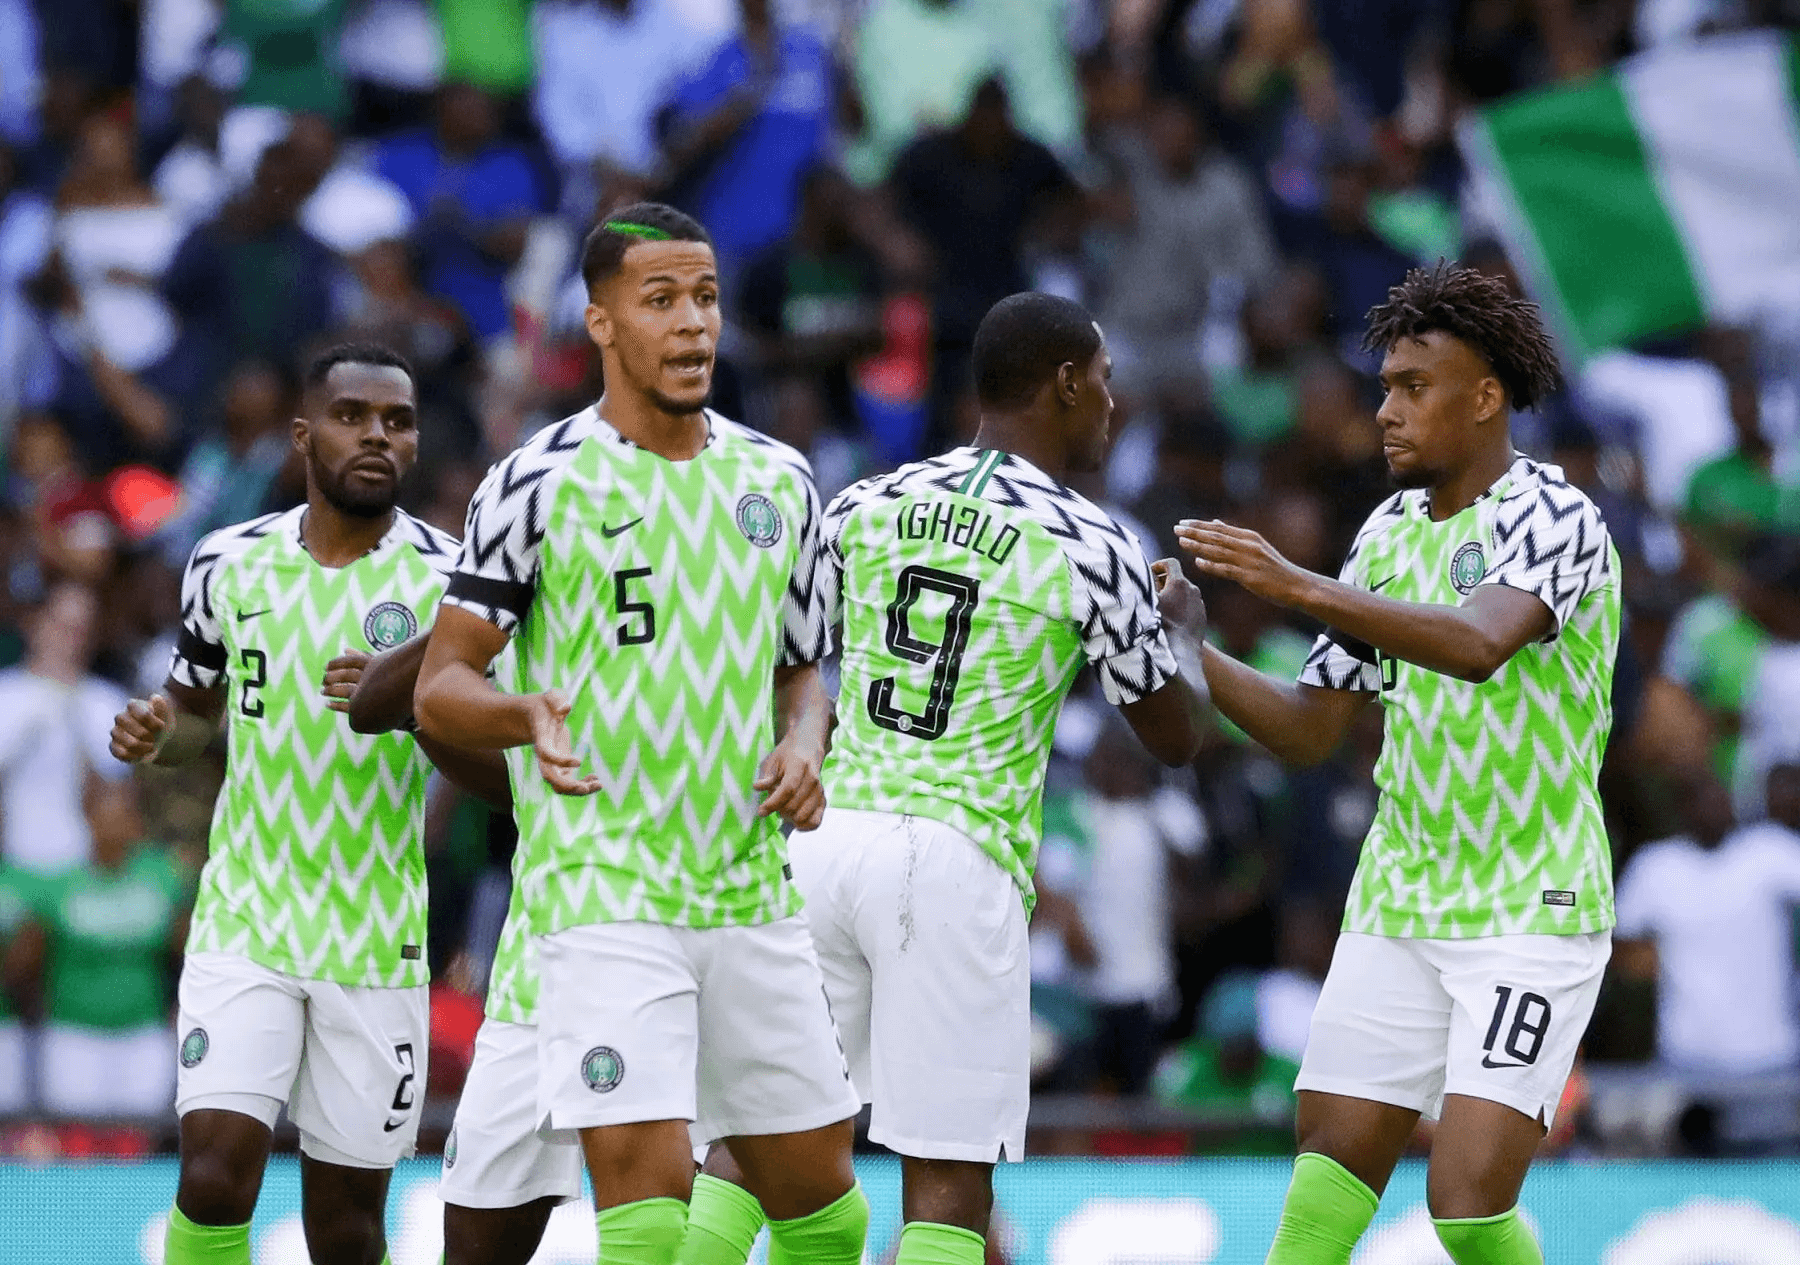 Image of Nigeria football team